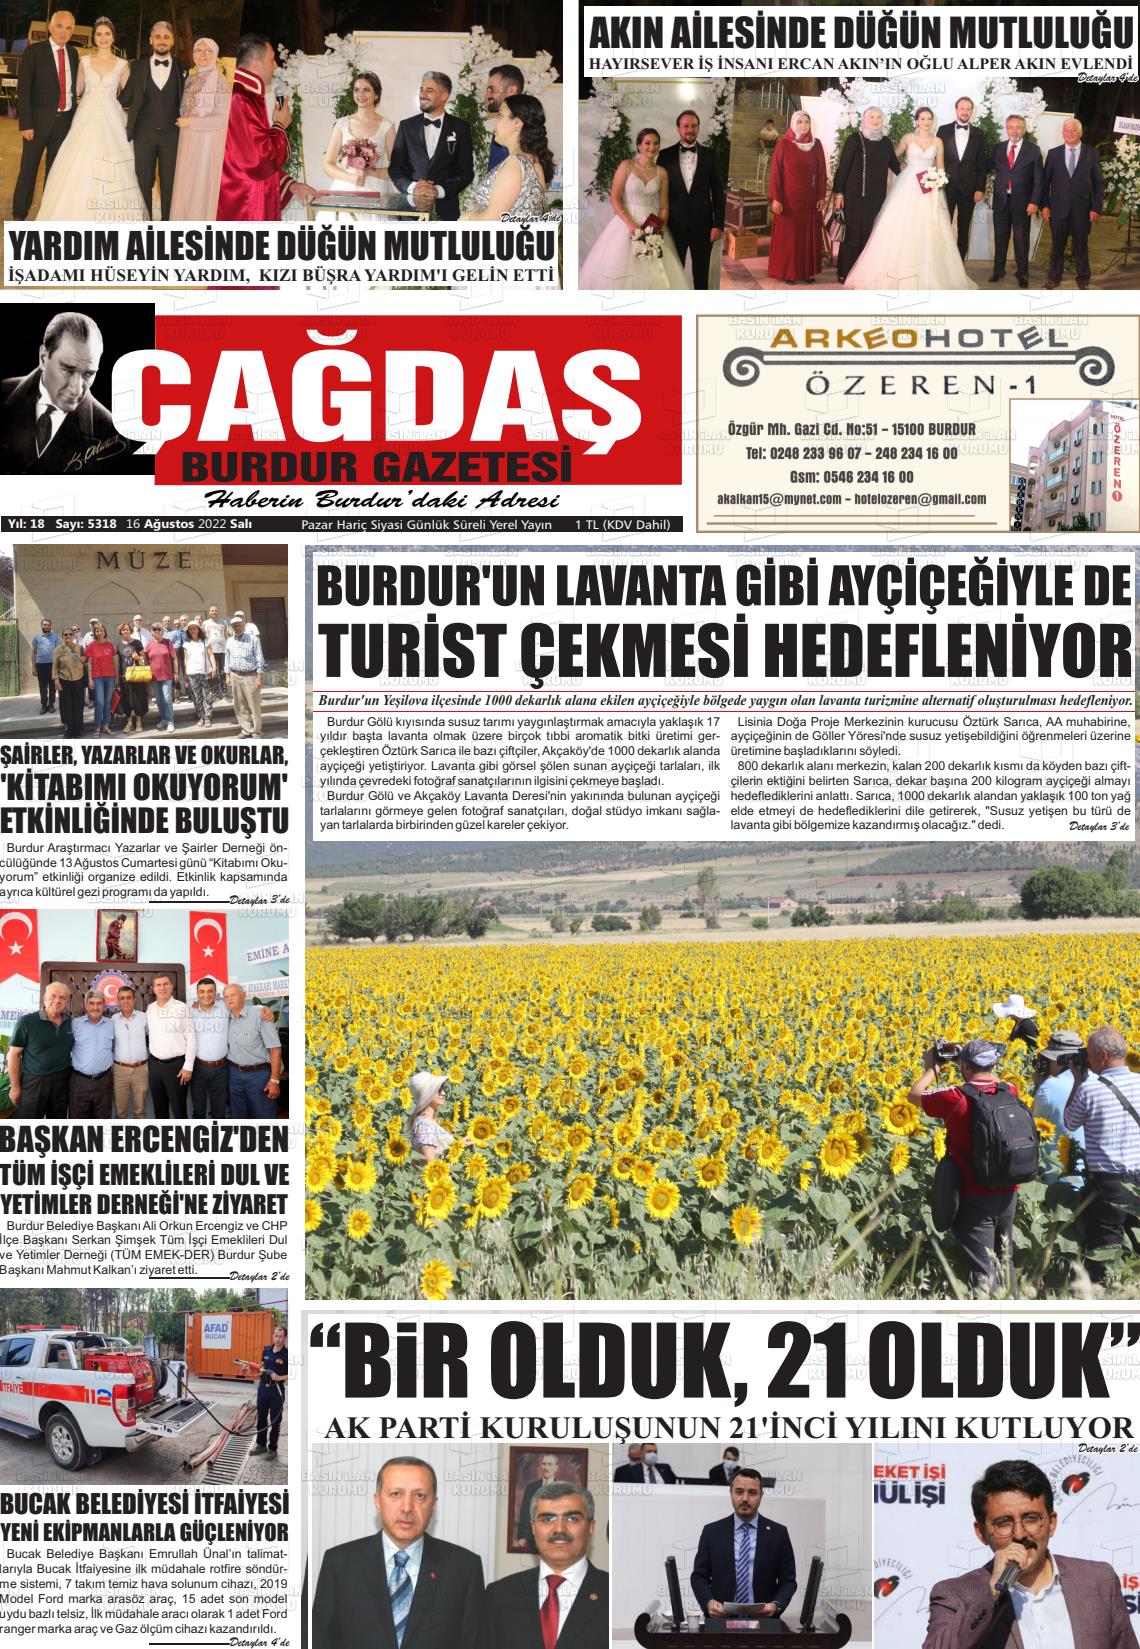 16 Ağustos 2022 Çağdaş Burdur Gazete Manşeti